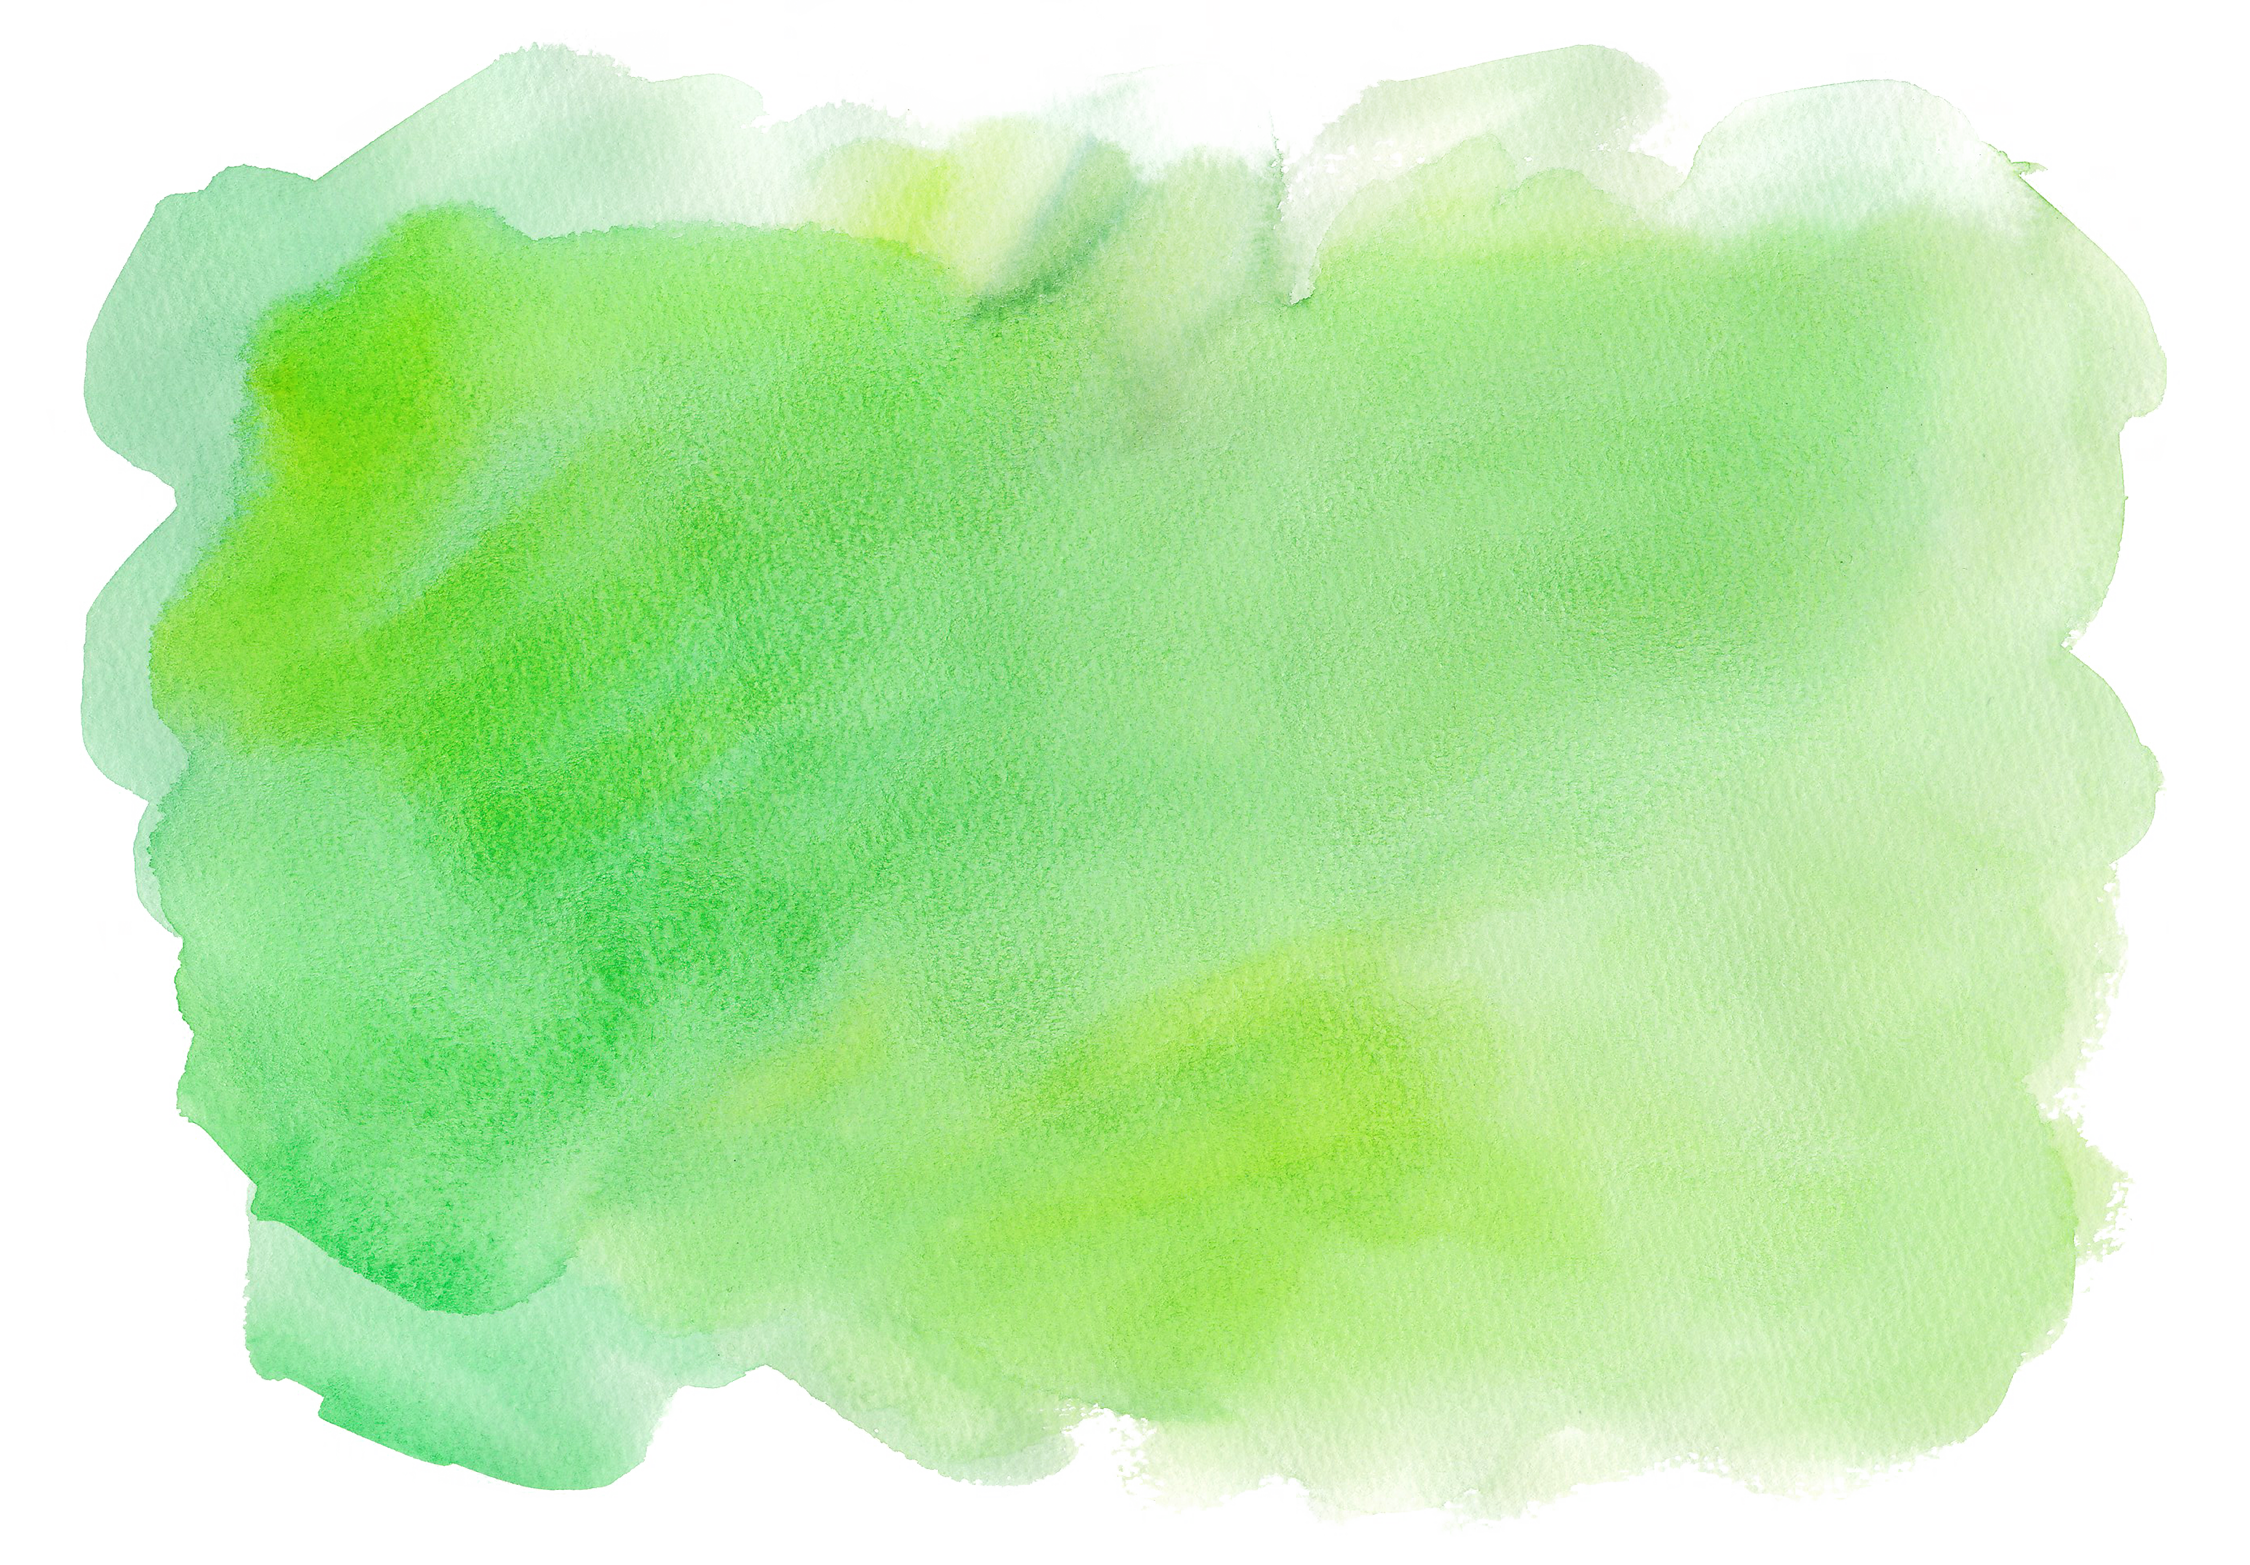 テクスチャ緑1 水彩 ガーリー素材 ふんわり可愛い無料イラスト素材 ふんわり可愛い無料イラスト素材